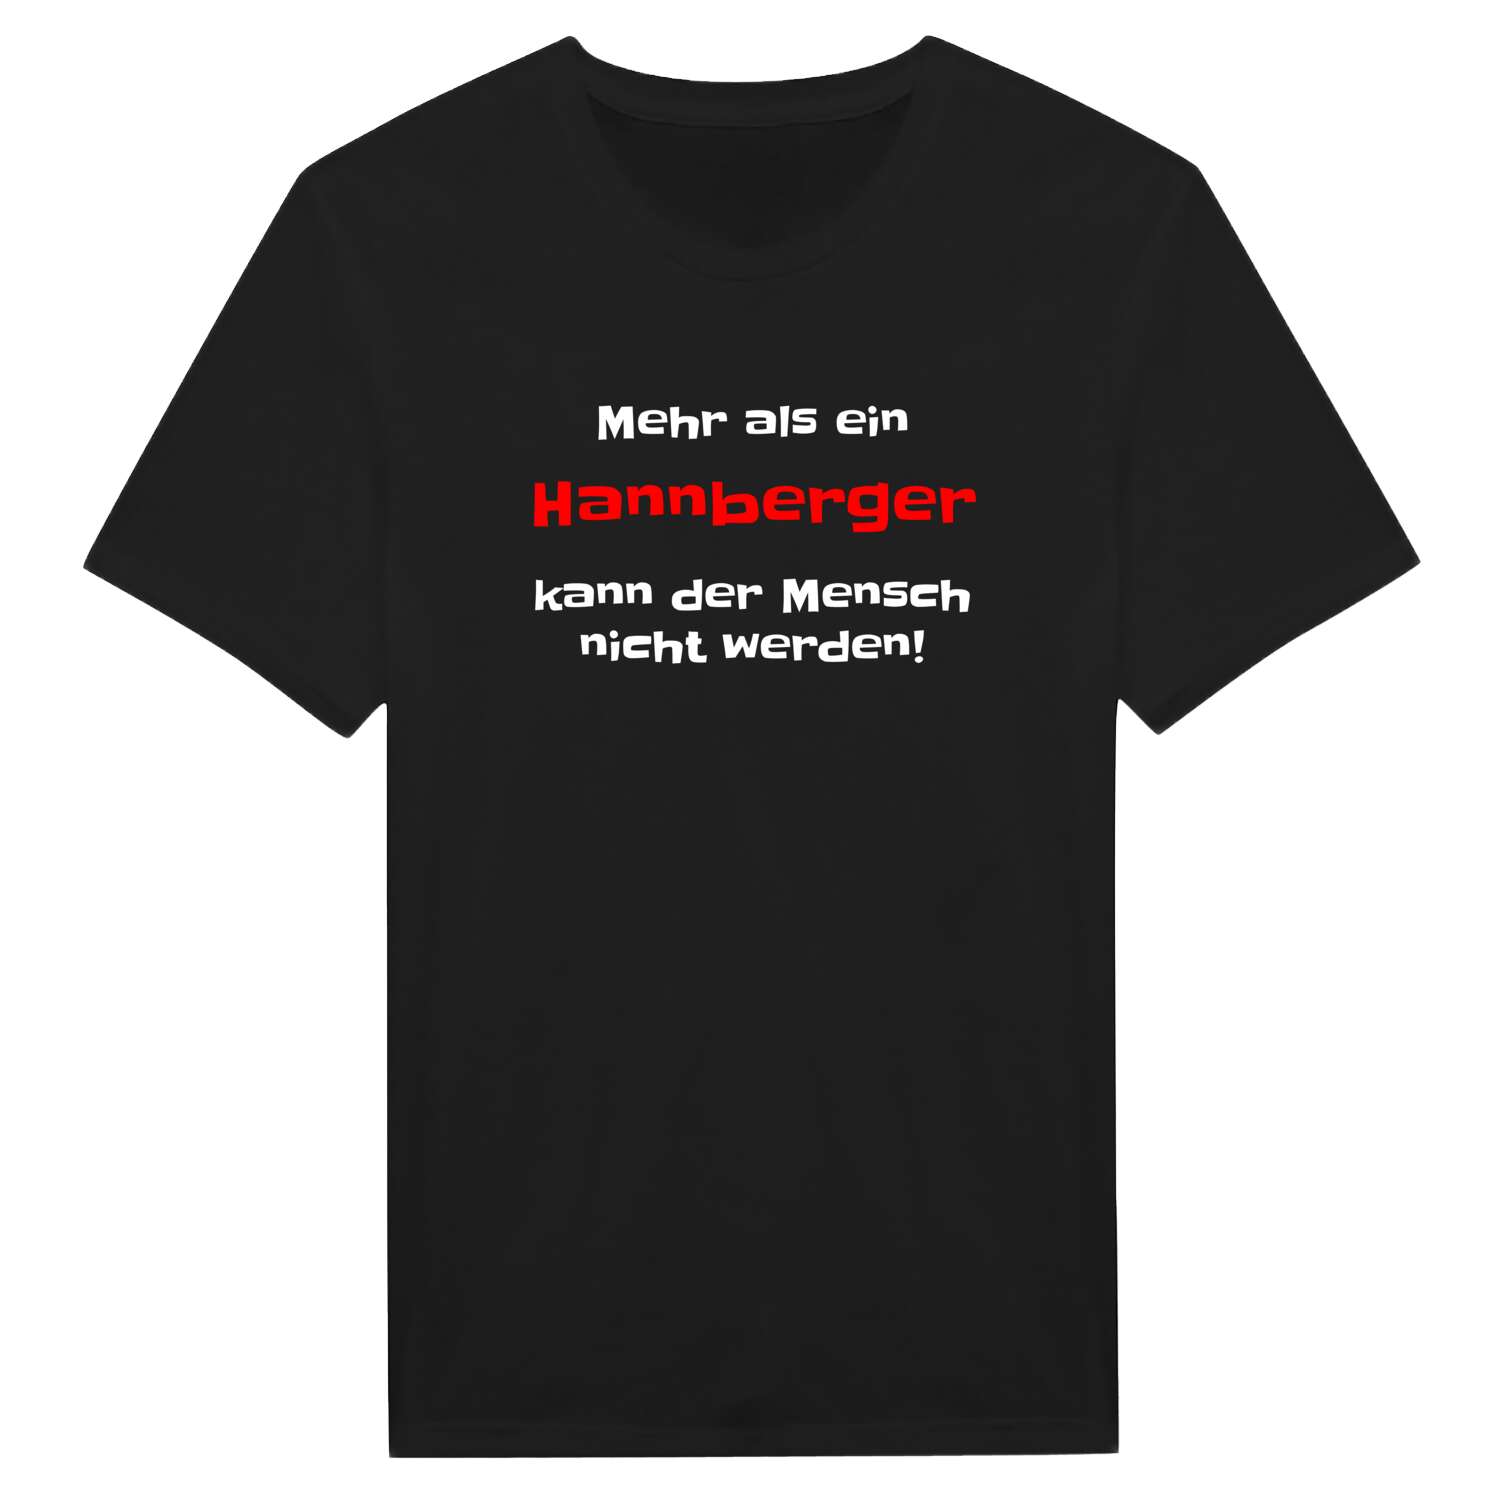 Hannberg T-Shirt »Mehr als ein«